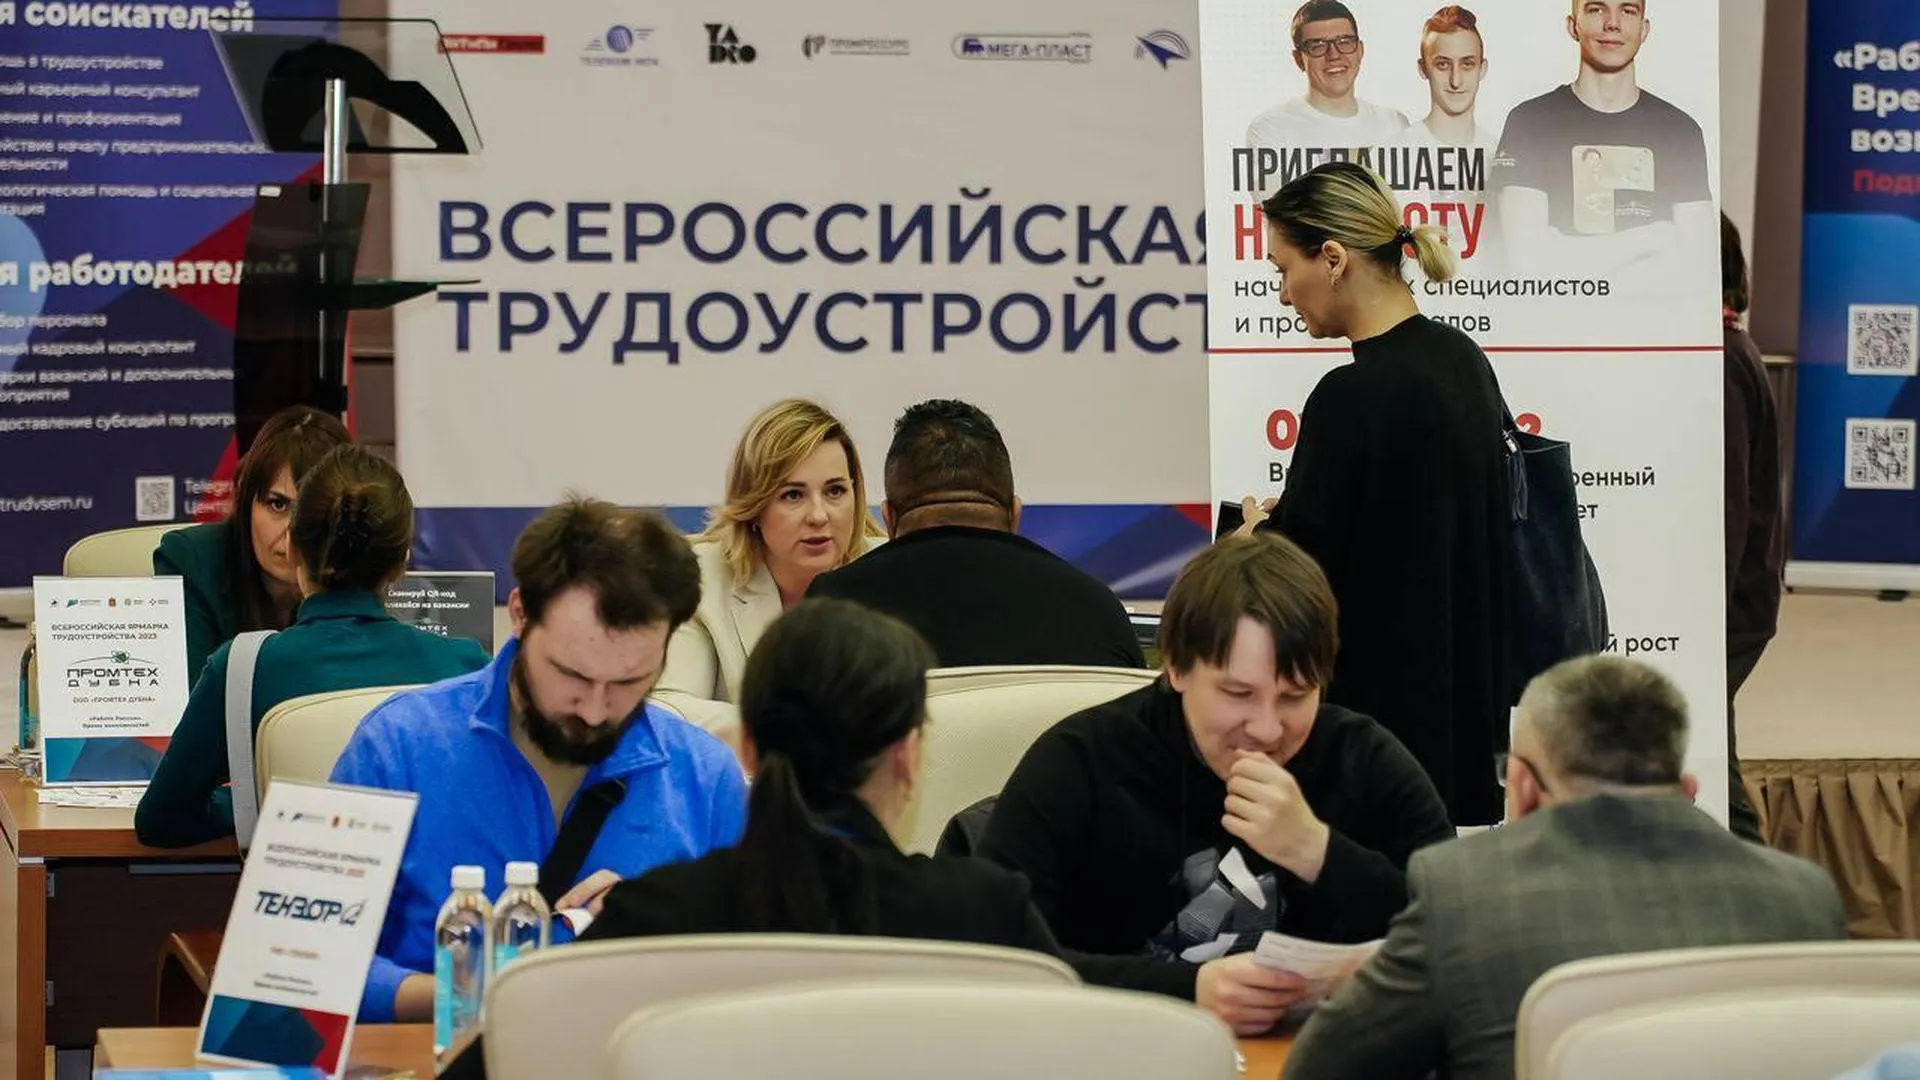 Региональный этап Всероссийской ярмарки трудоустройства начнется в Подмосковье 10 апреля